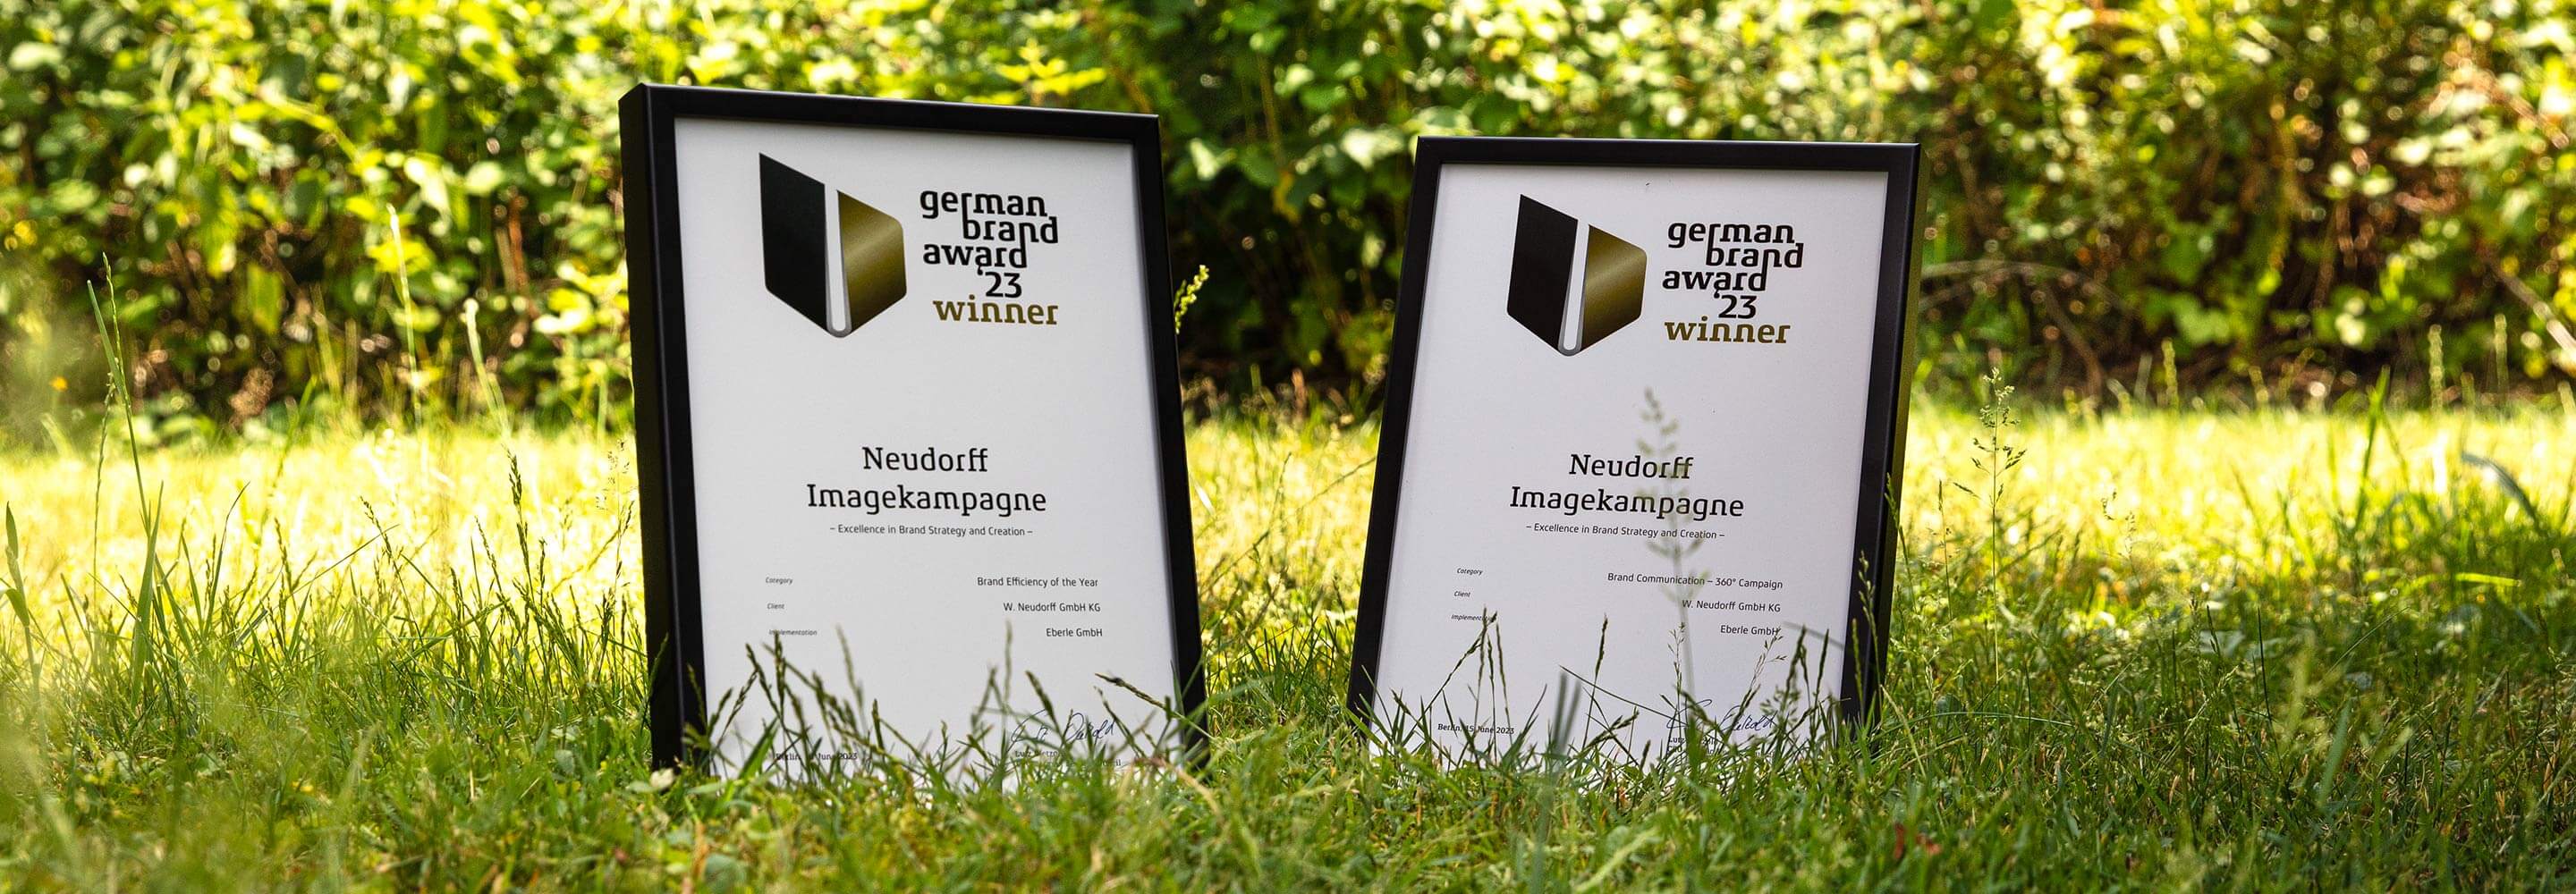 Eberle Brand Design und Communication gewinnt German Brand Award